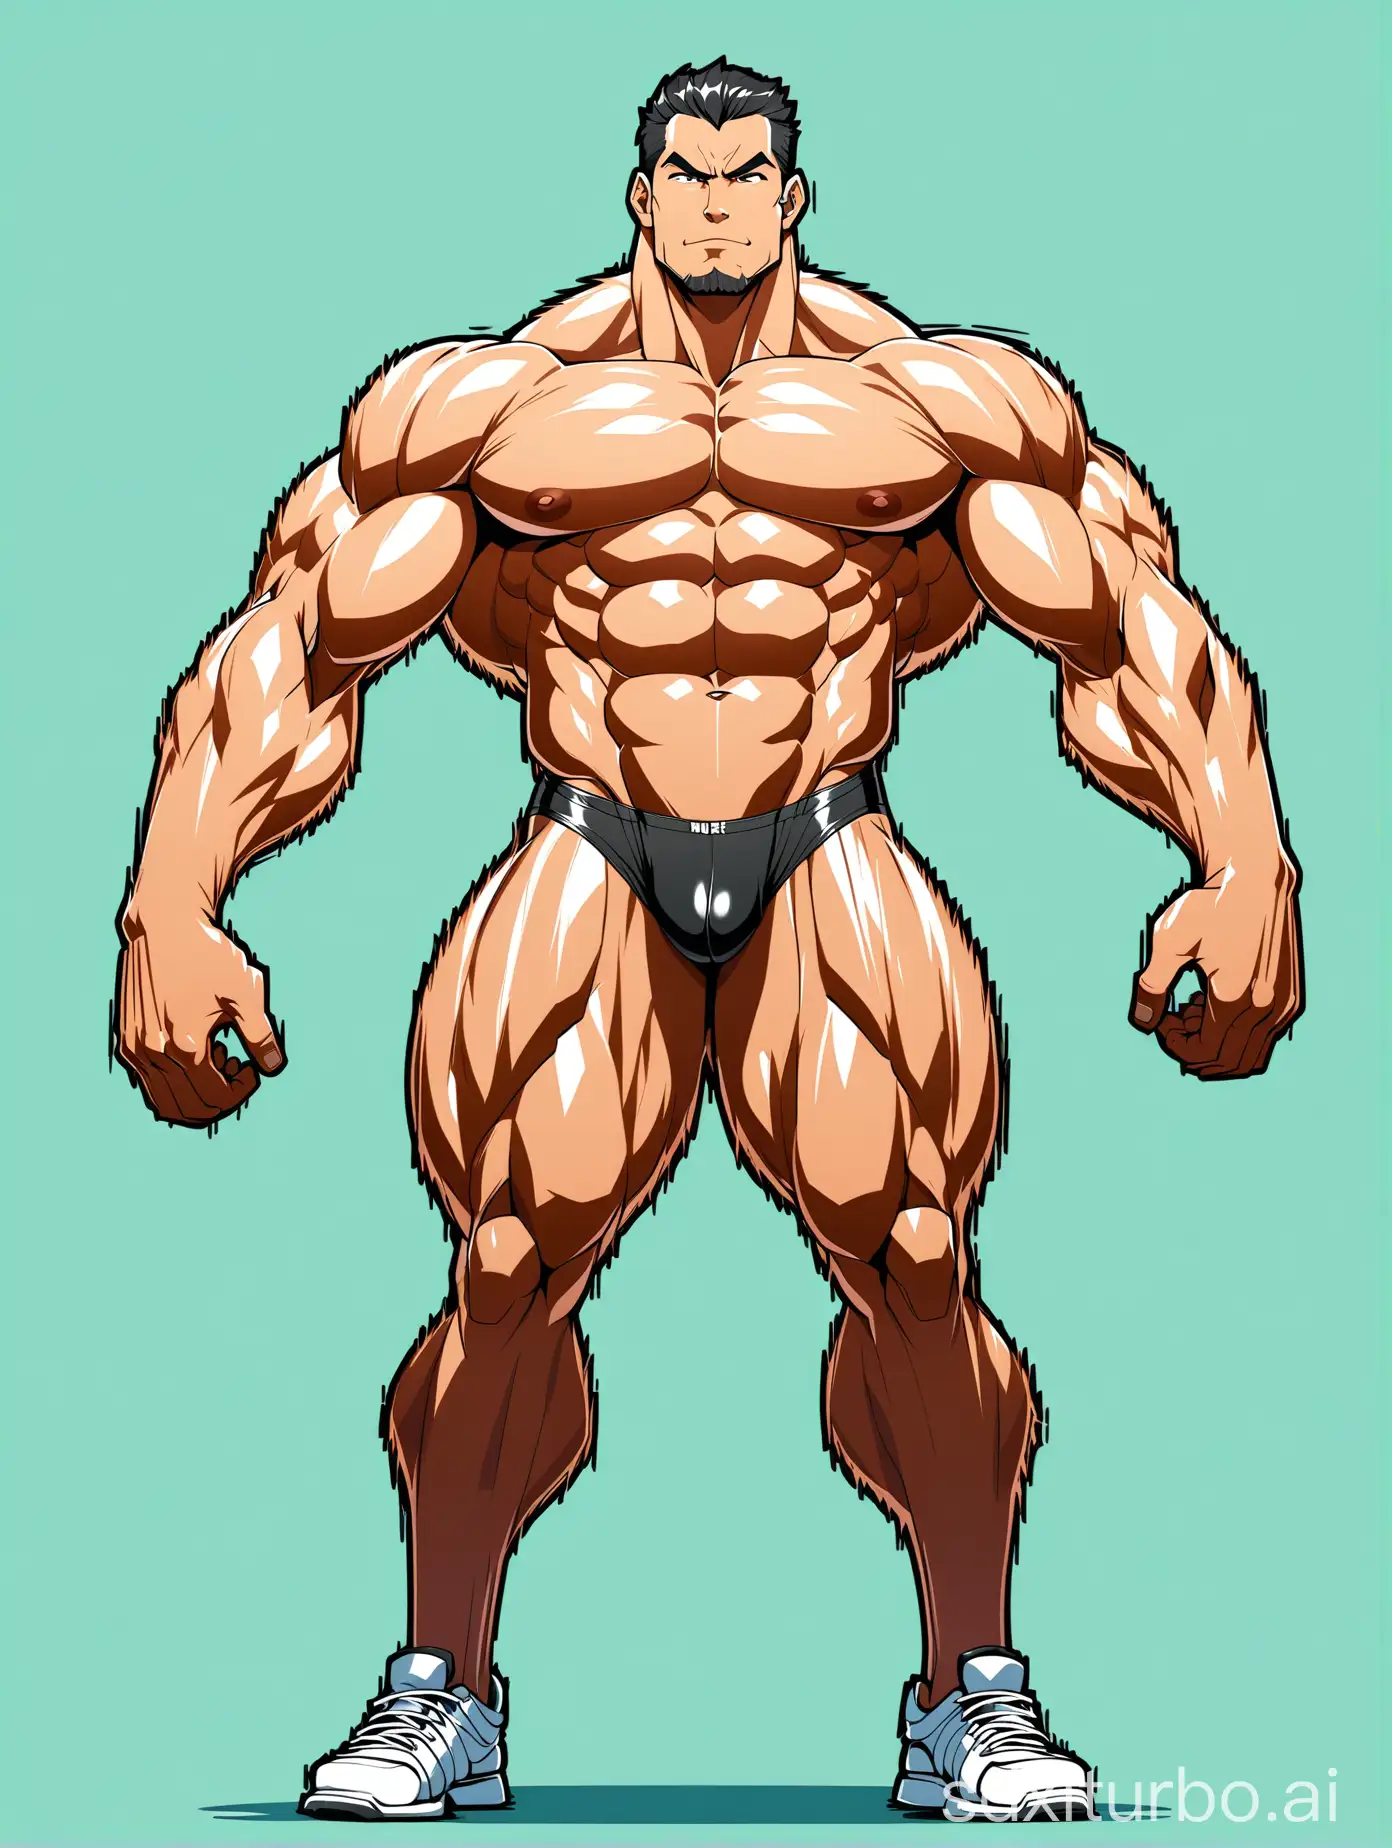 Massive-Muscle-Stud-Flexing-Biceps-in-Underwear